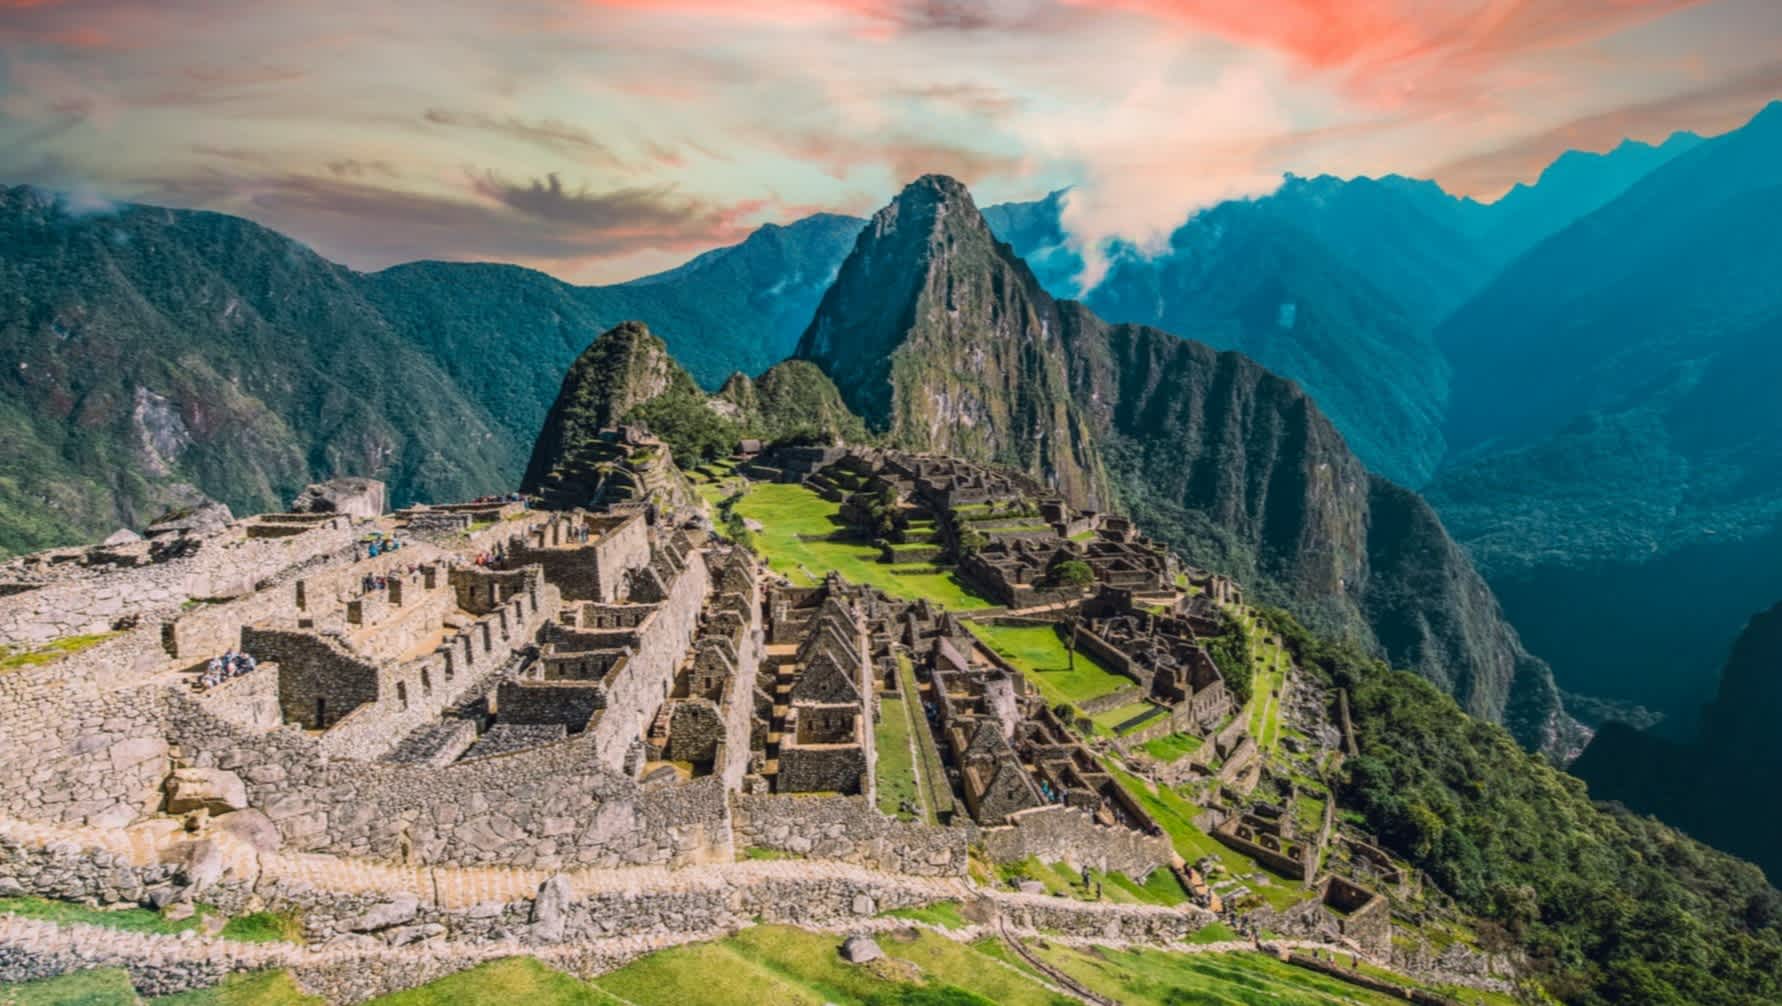 Blick zum Machu Picchu, die Stadt des Inka-Reiches, Peru. 

